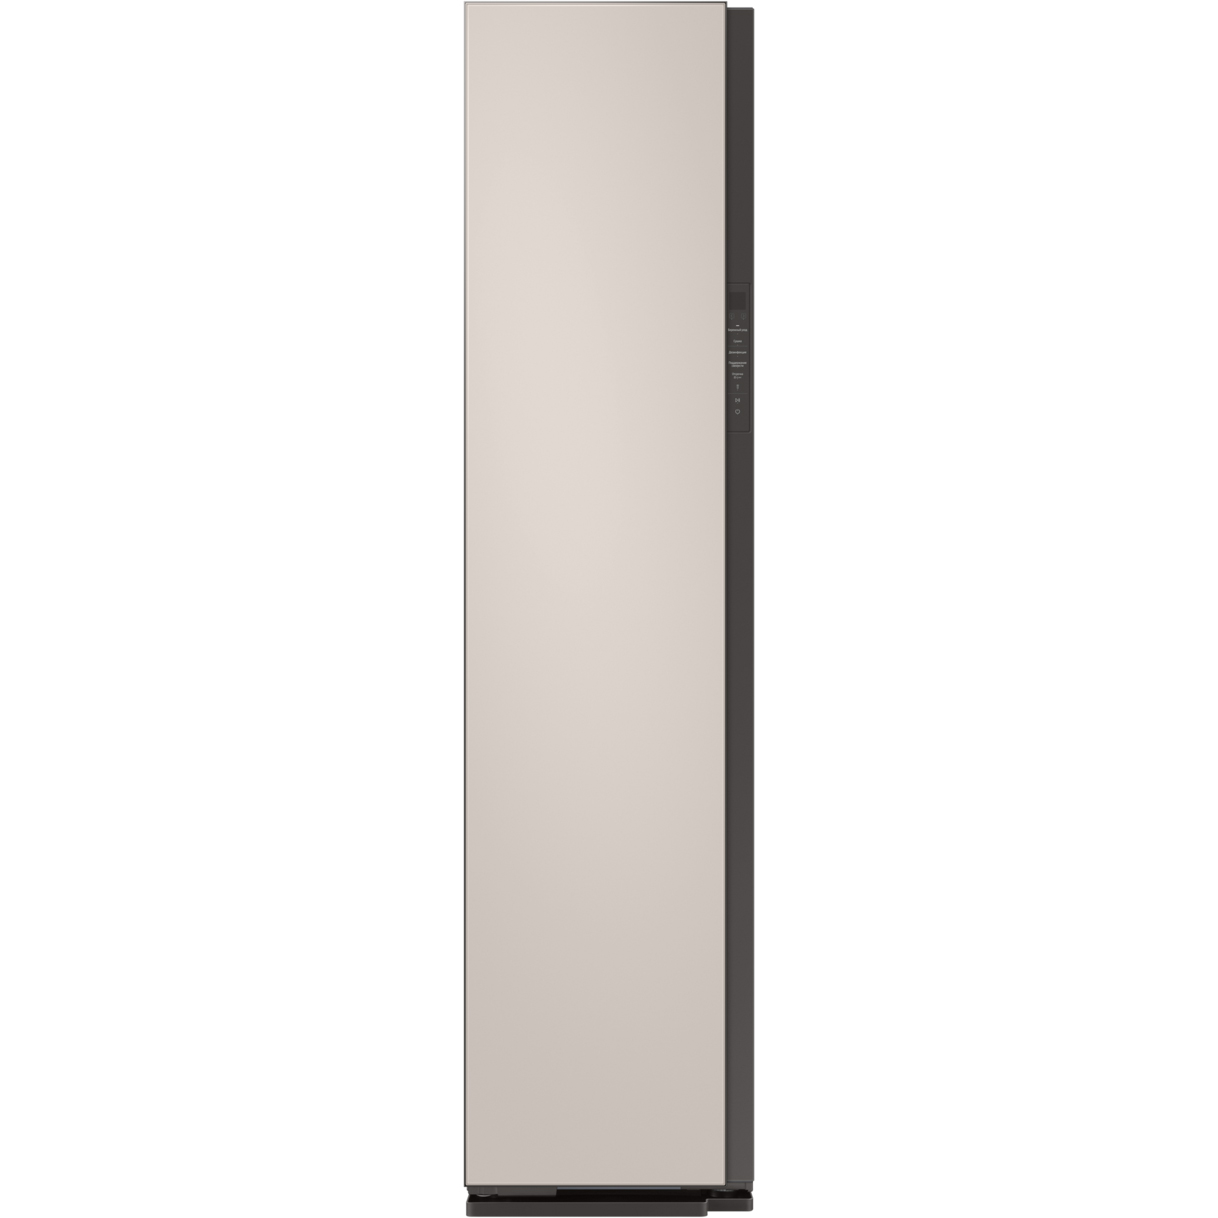 Паровой шкаф Samsung DF60A8500EG матово-бежевый, цвет черный